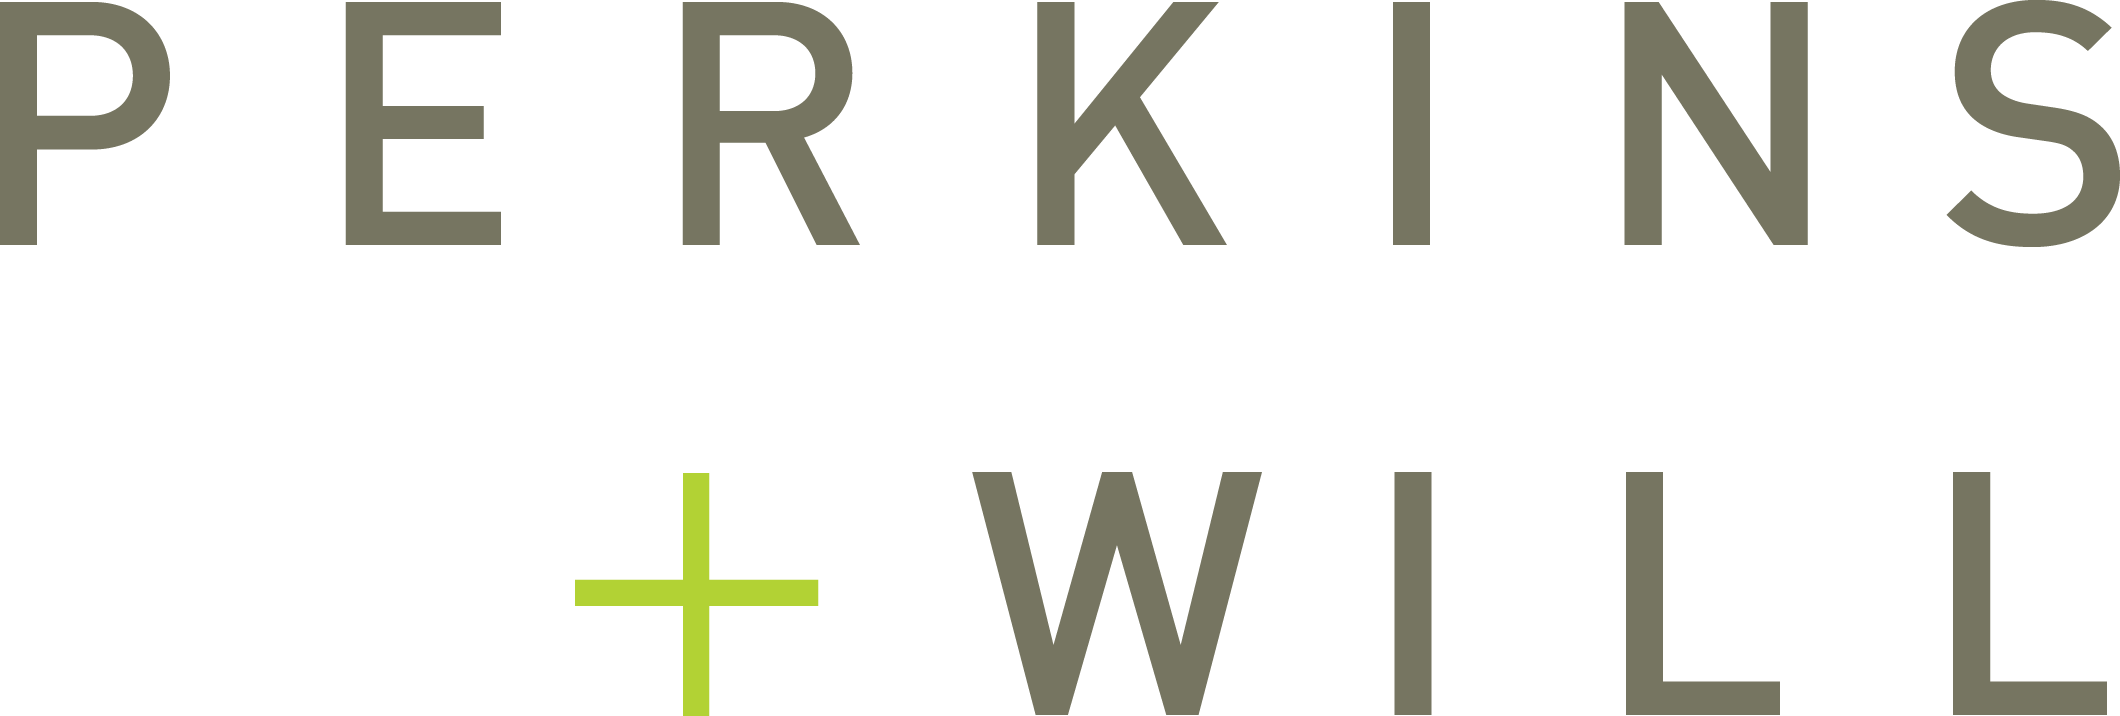 perkins-will-logo